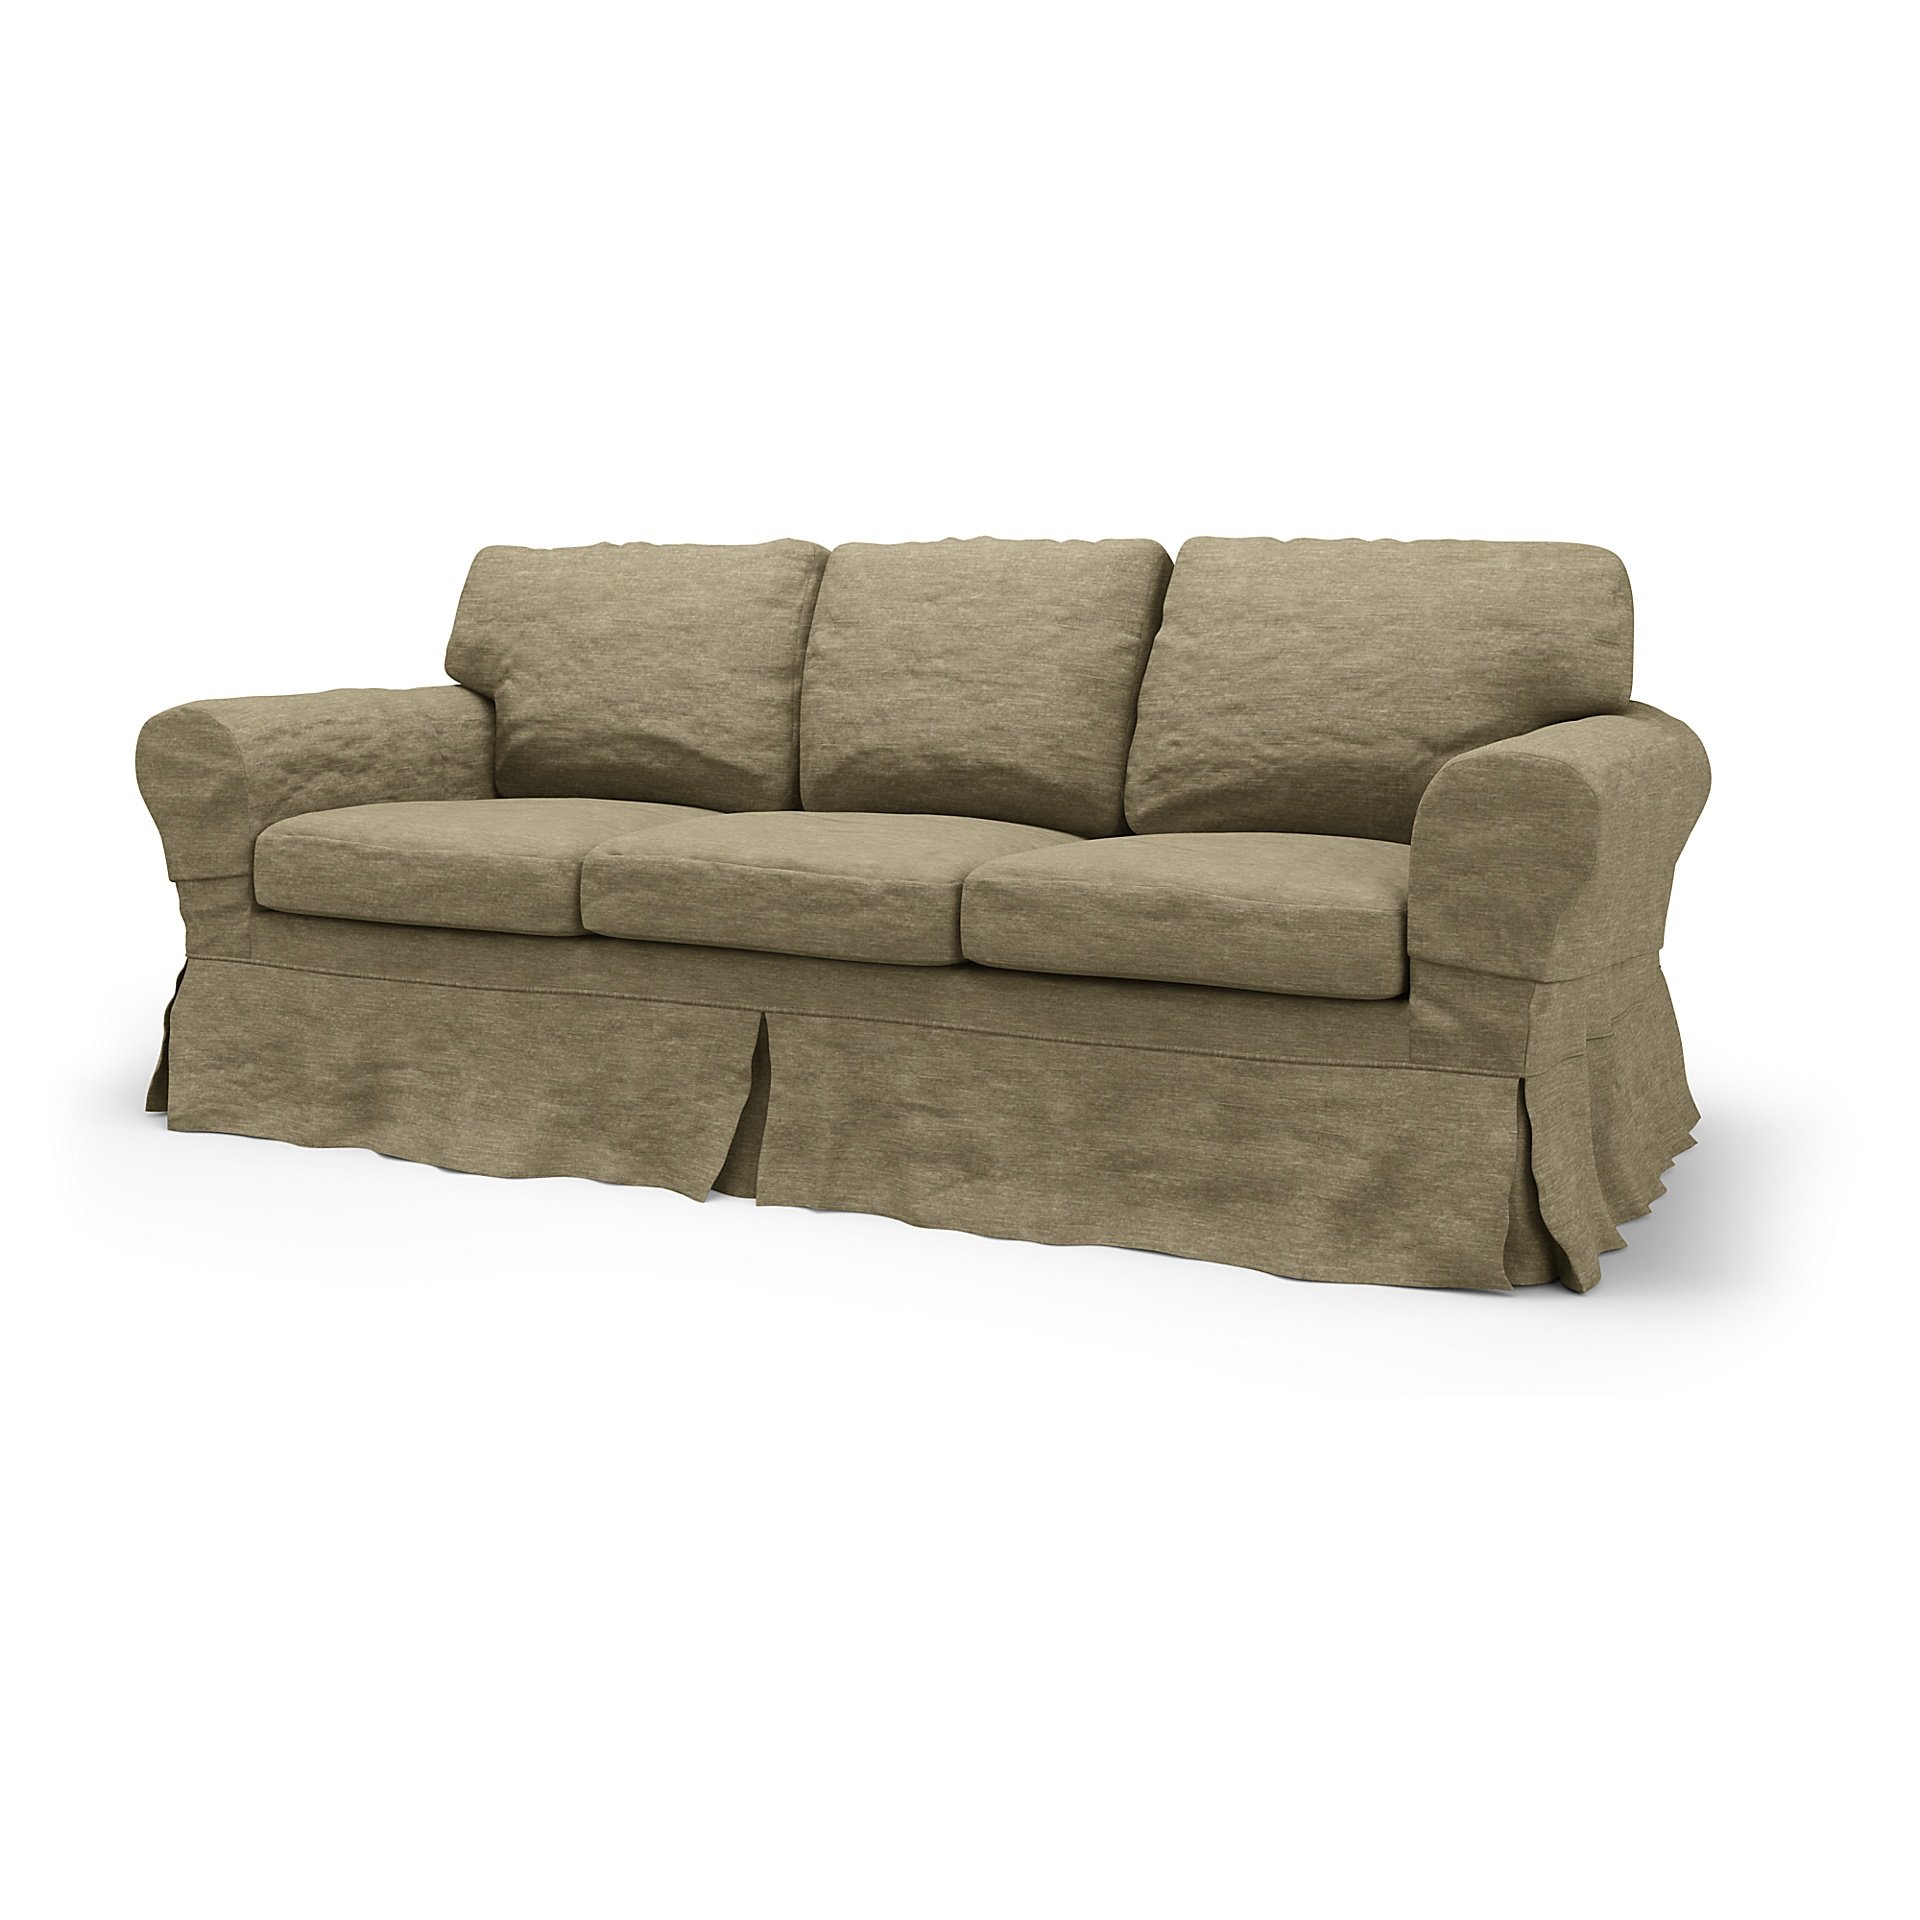 IKEA - Ektorp 3 Seater Sofa Bed Cover, Beige, Velvet - Bemz